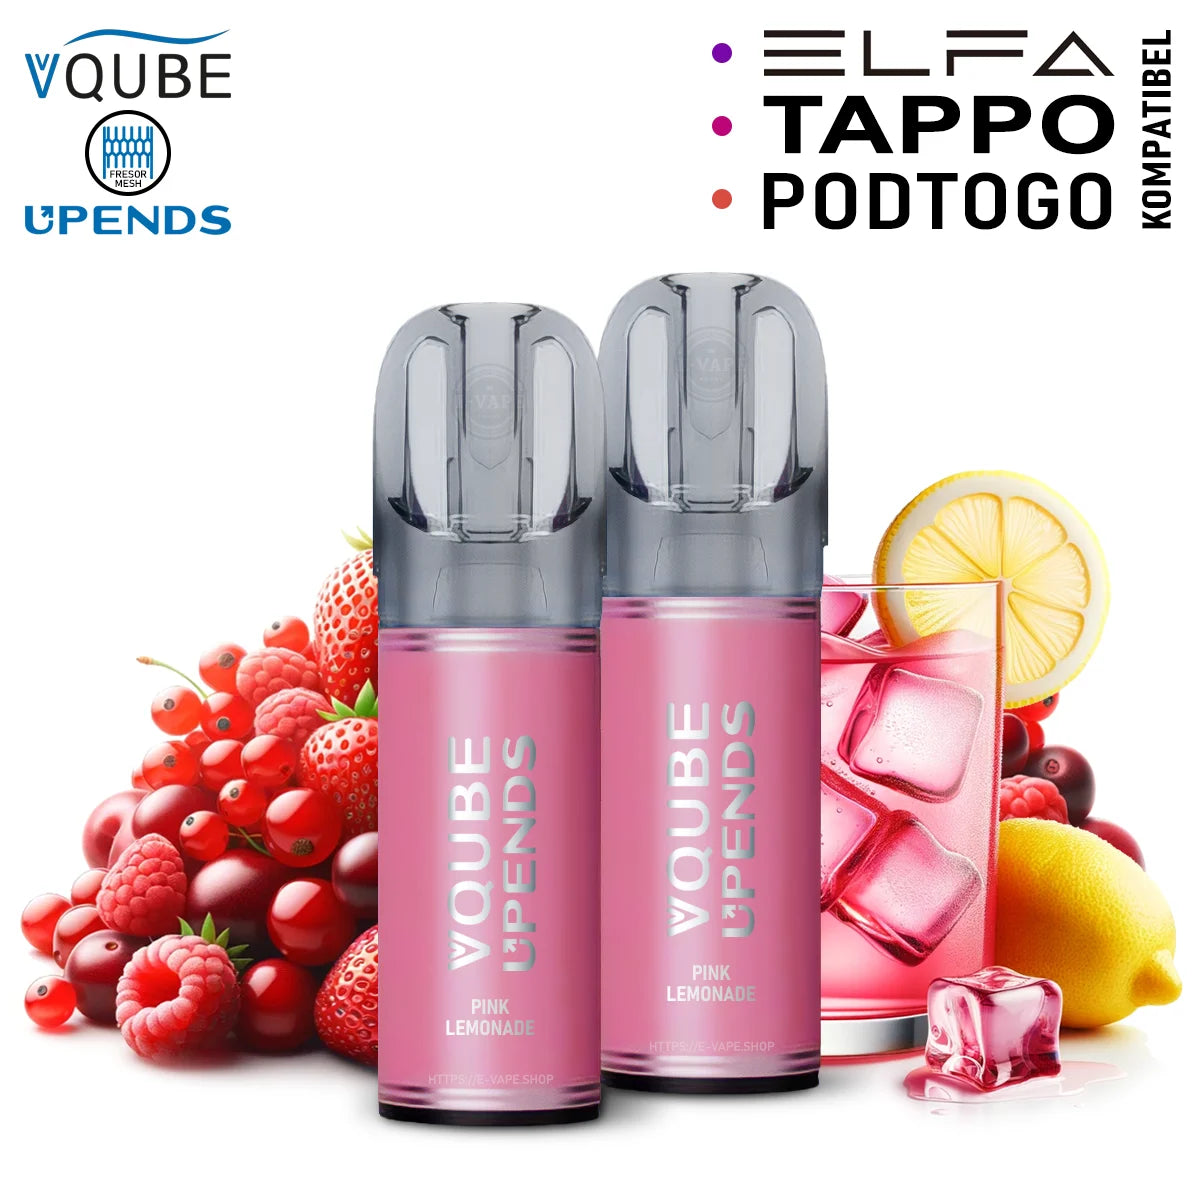 Vqube Upends Pod Pink Lemonade 20mg ELFA / Tappo / Pod2Go